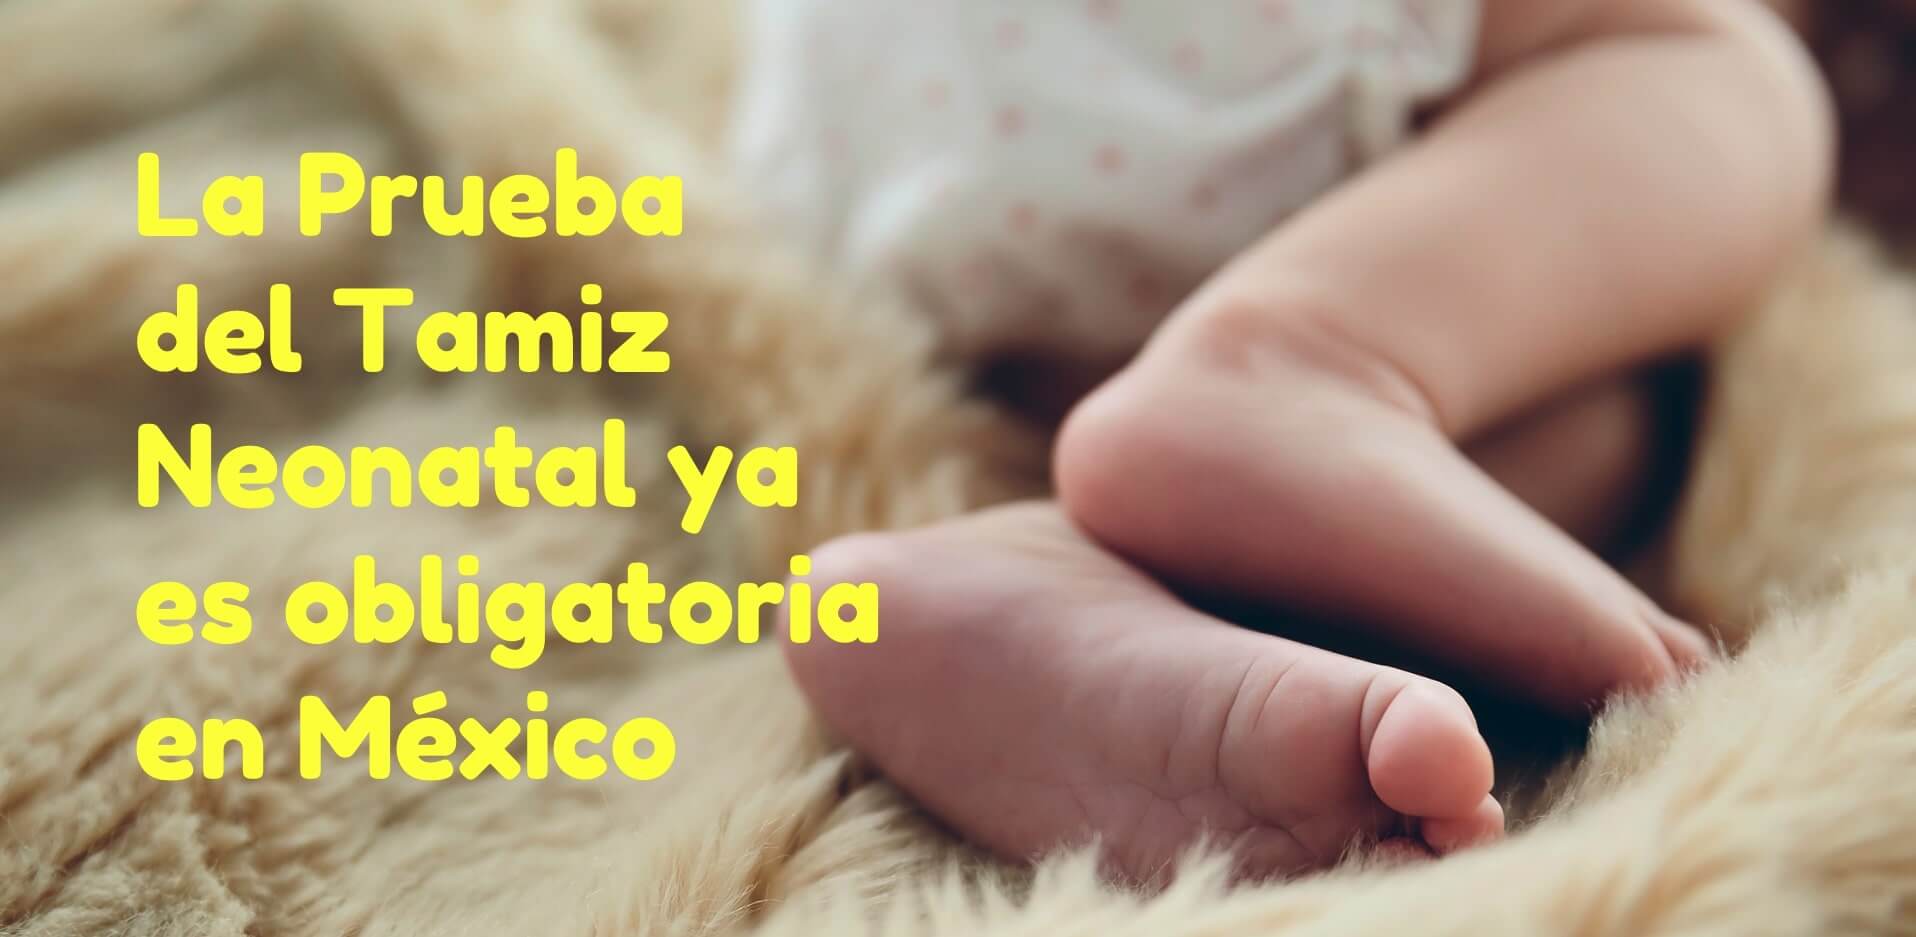 Prueba de Tamiz Neonatal OBLIGATORIO por Ley en México Cover